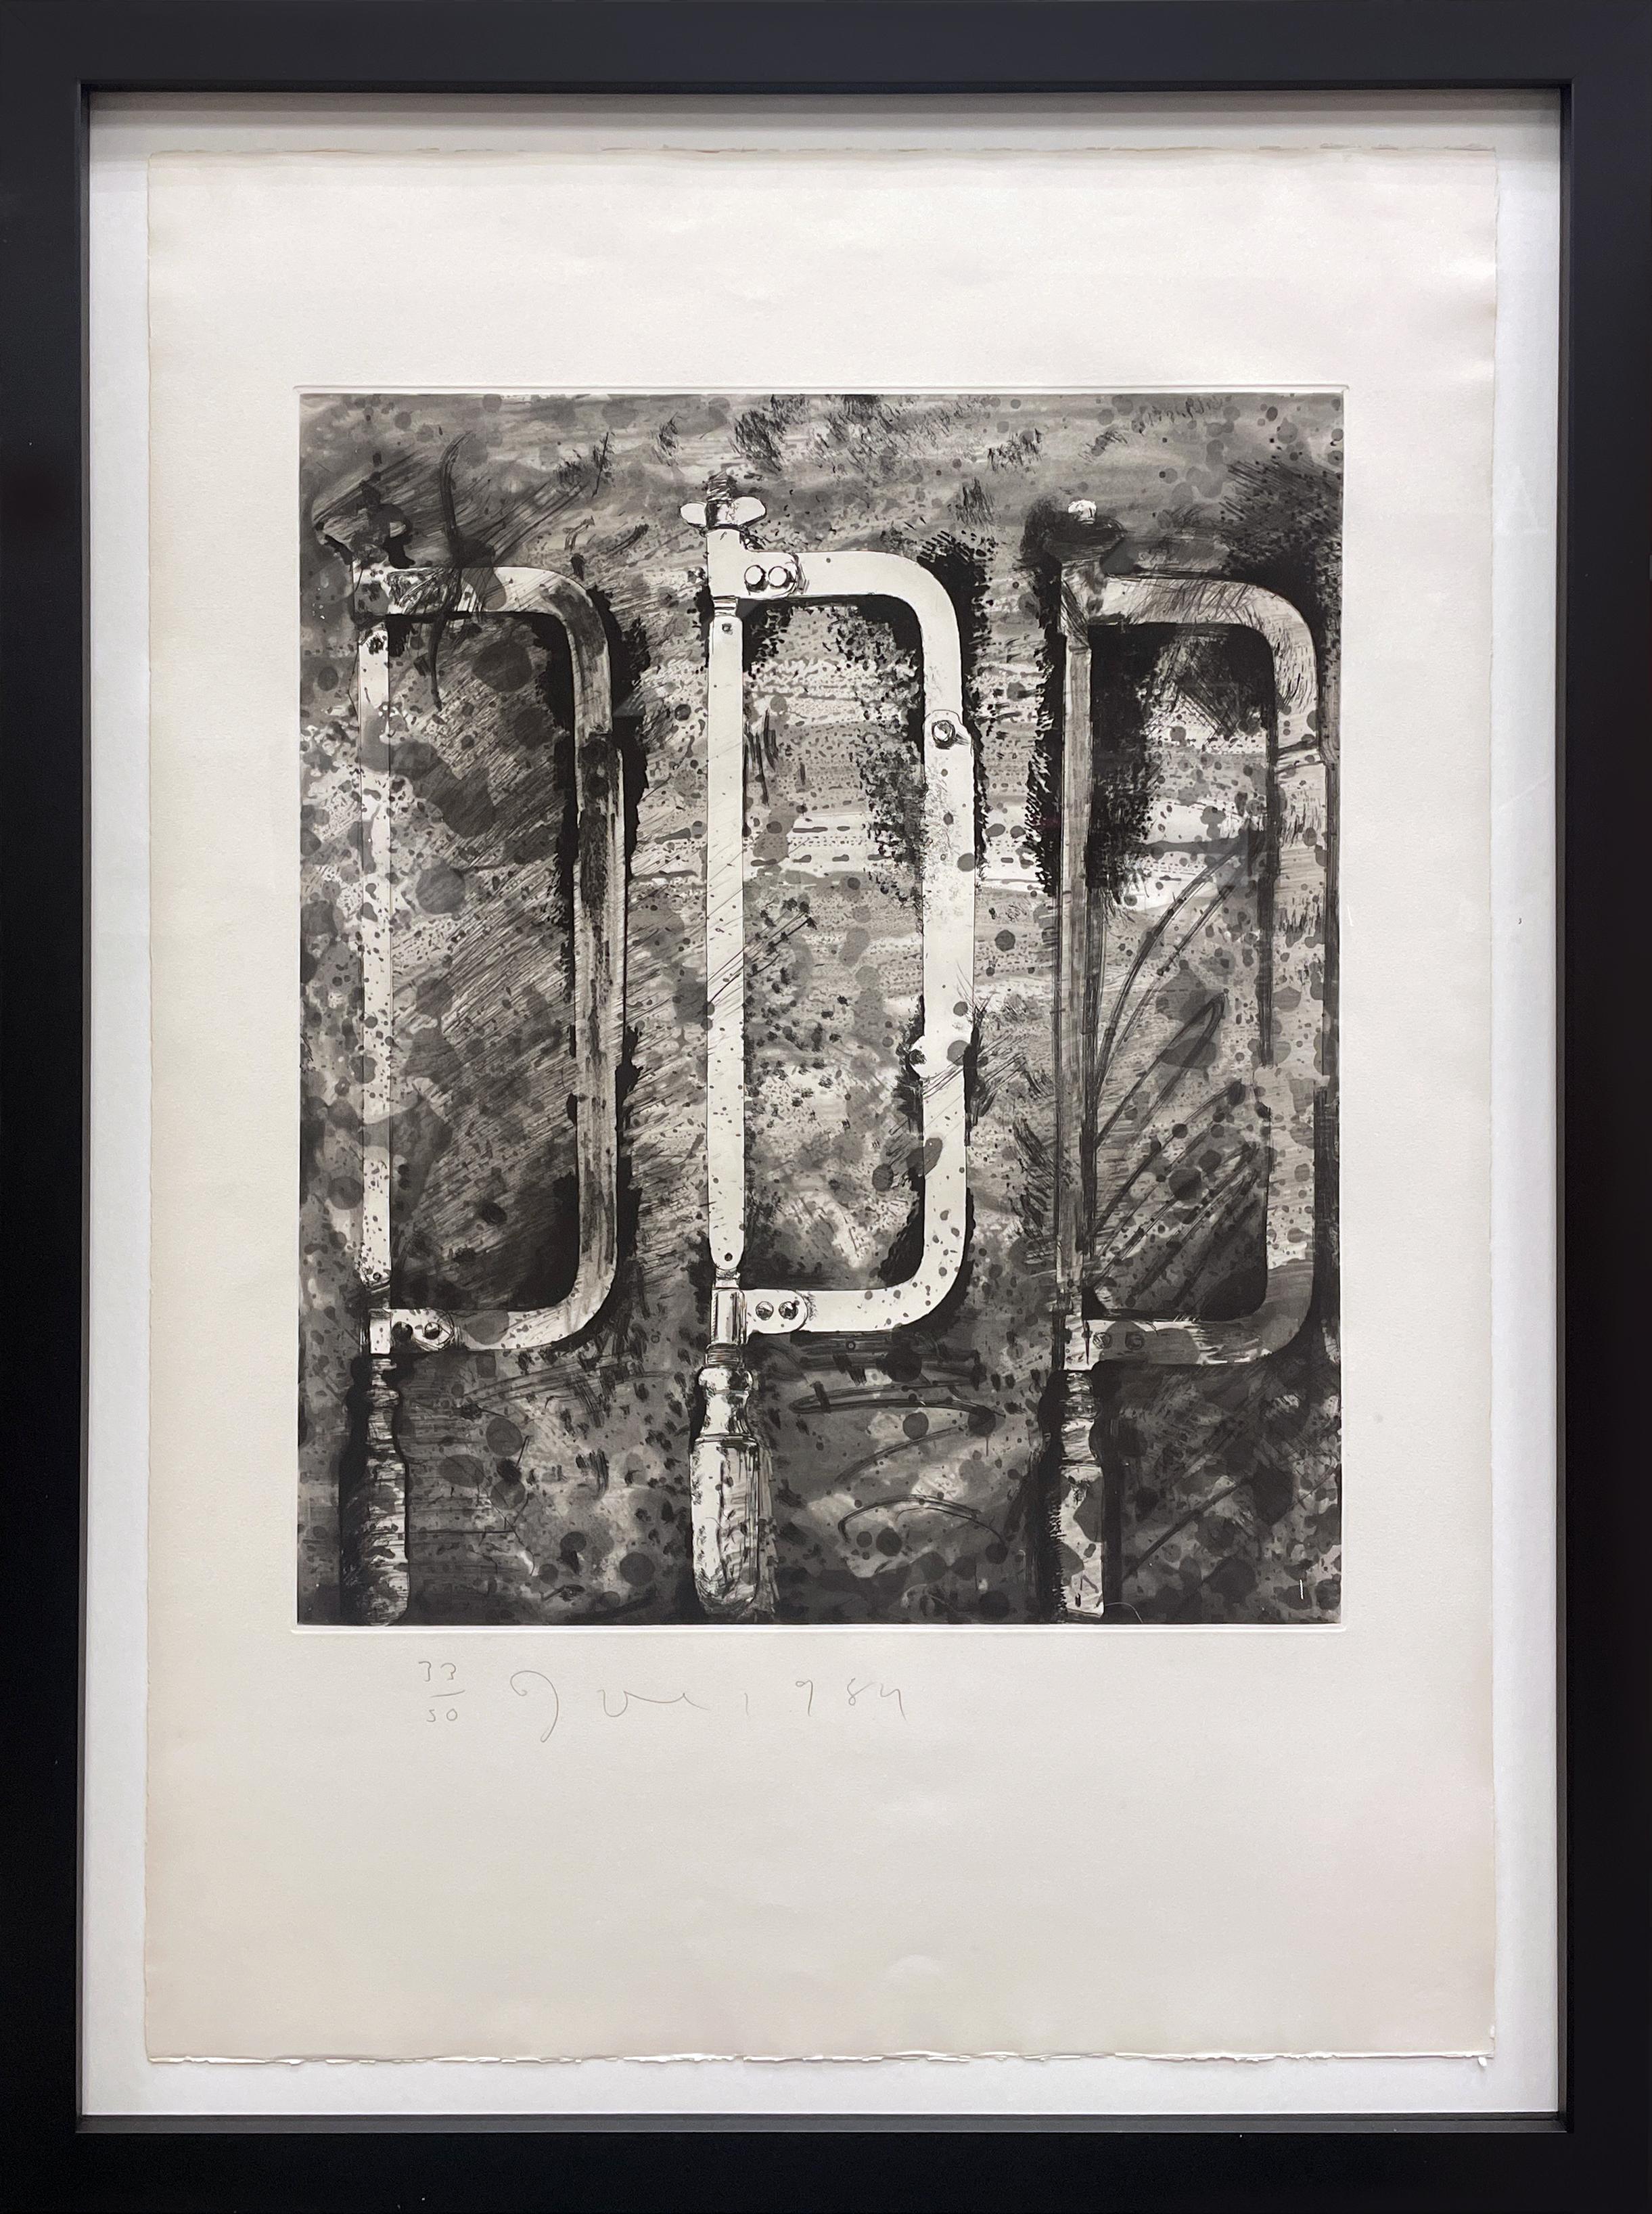 Abstract Print Jim Dine - "Les nouveaux outils français 2 - Les trois scies de la rue Cler"